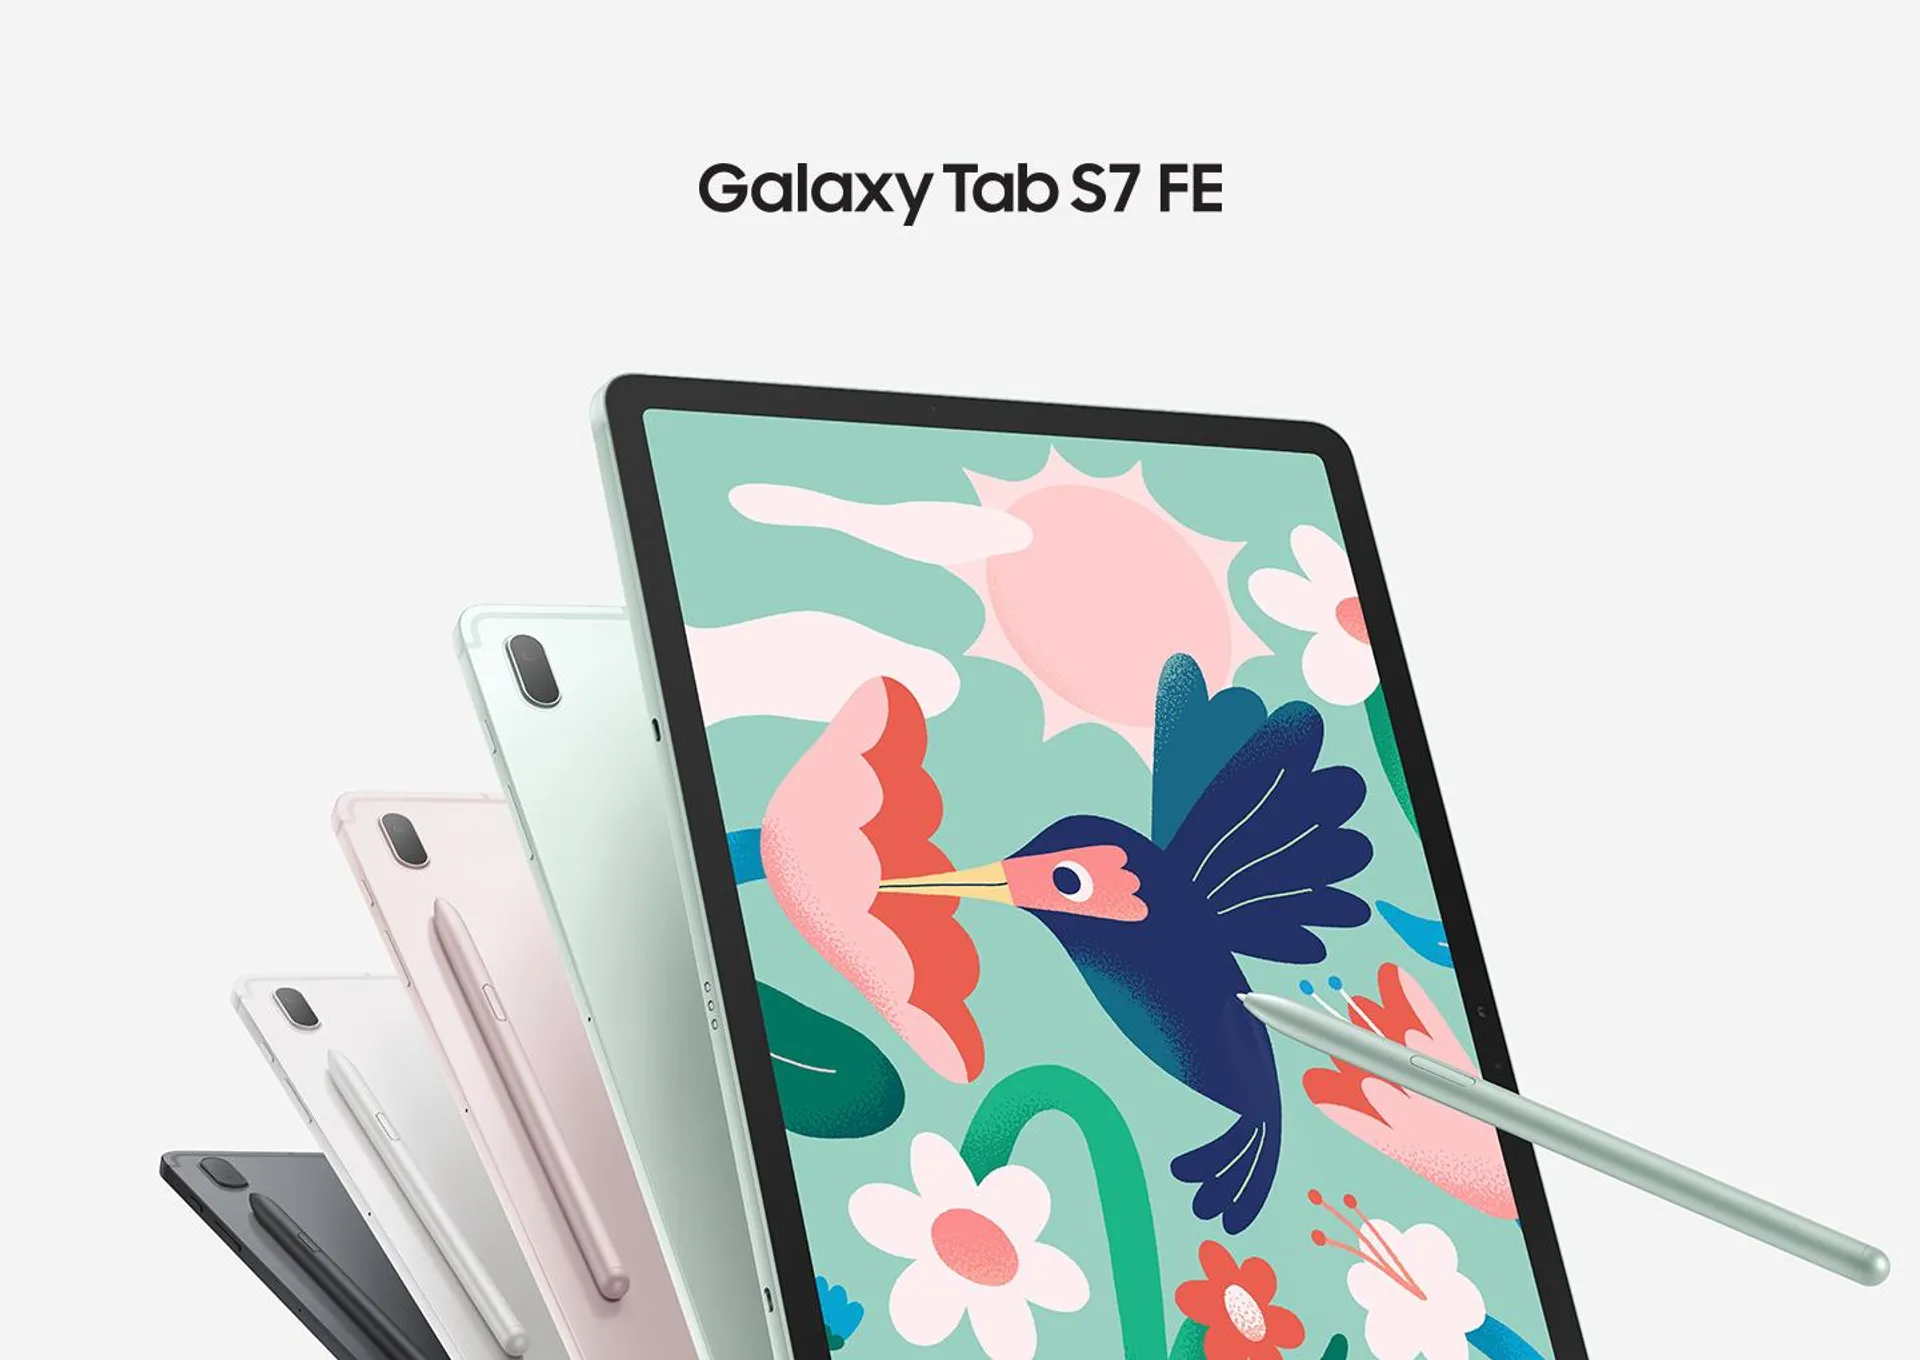 Galaxy Tab S7 FE + Keyboard Cover (12.4") WIFI + 4G